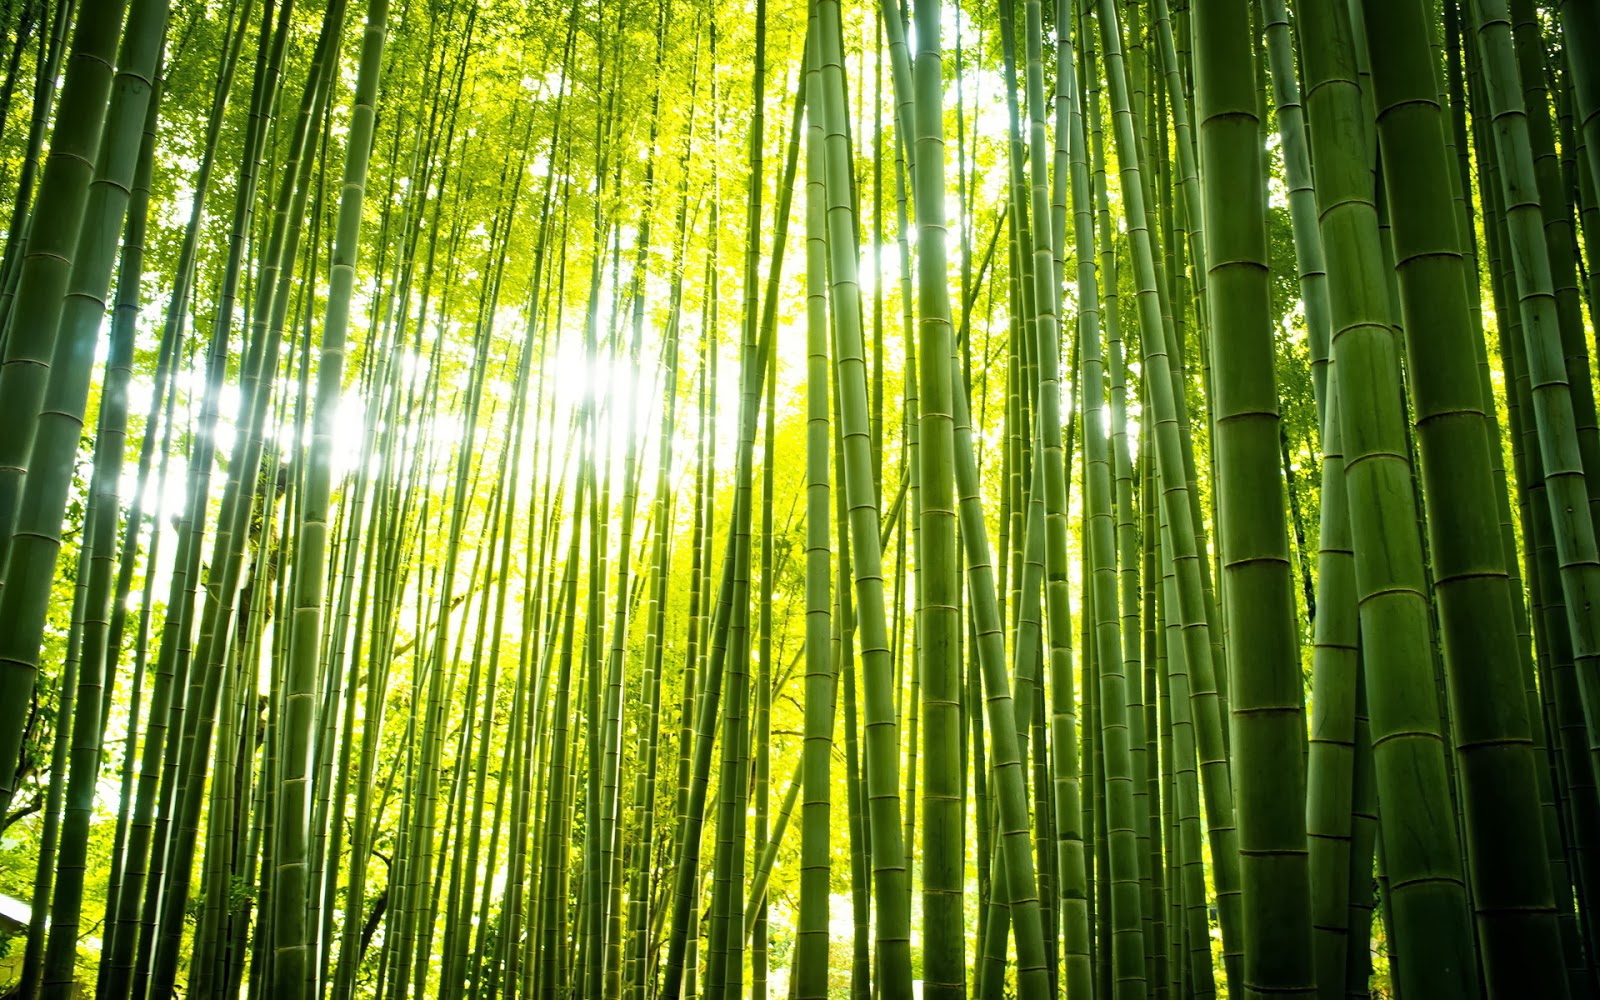 papier peint en bambou,vert,bambou,la nature,forêt,arbre